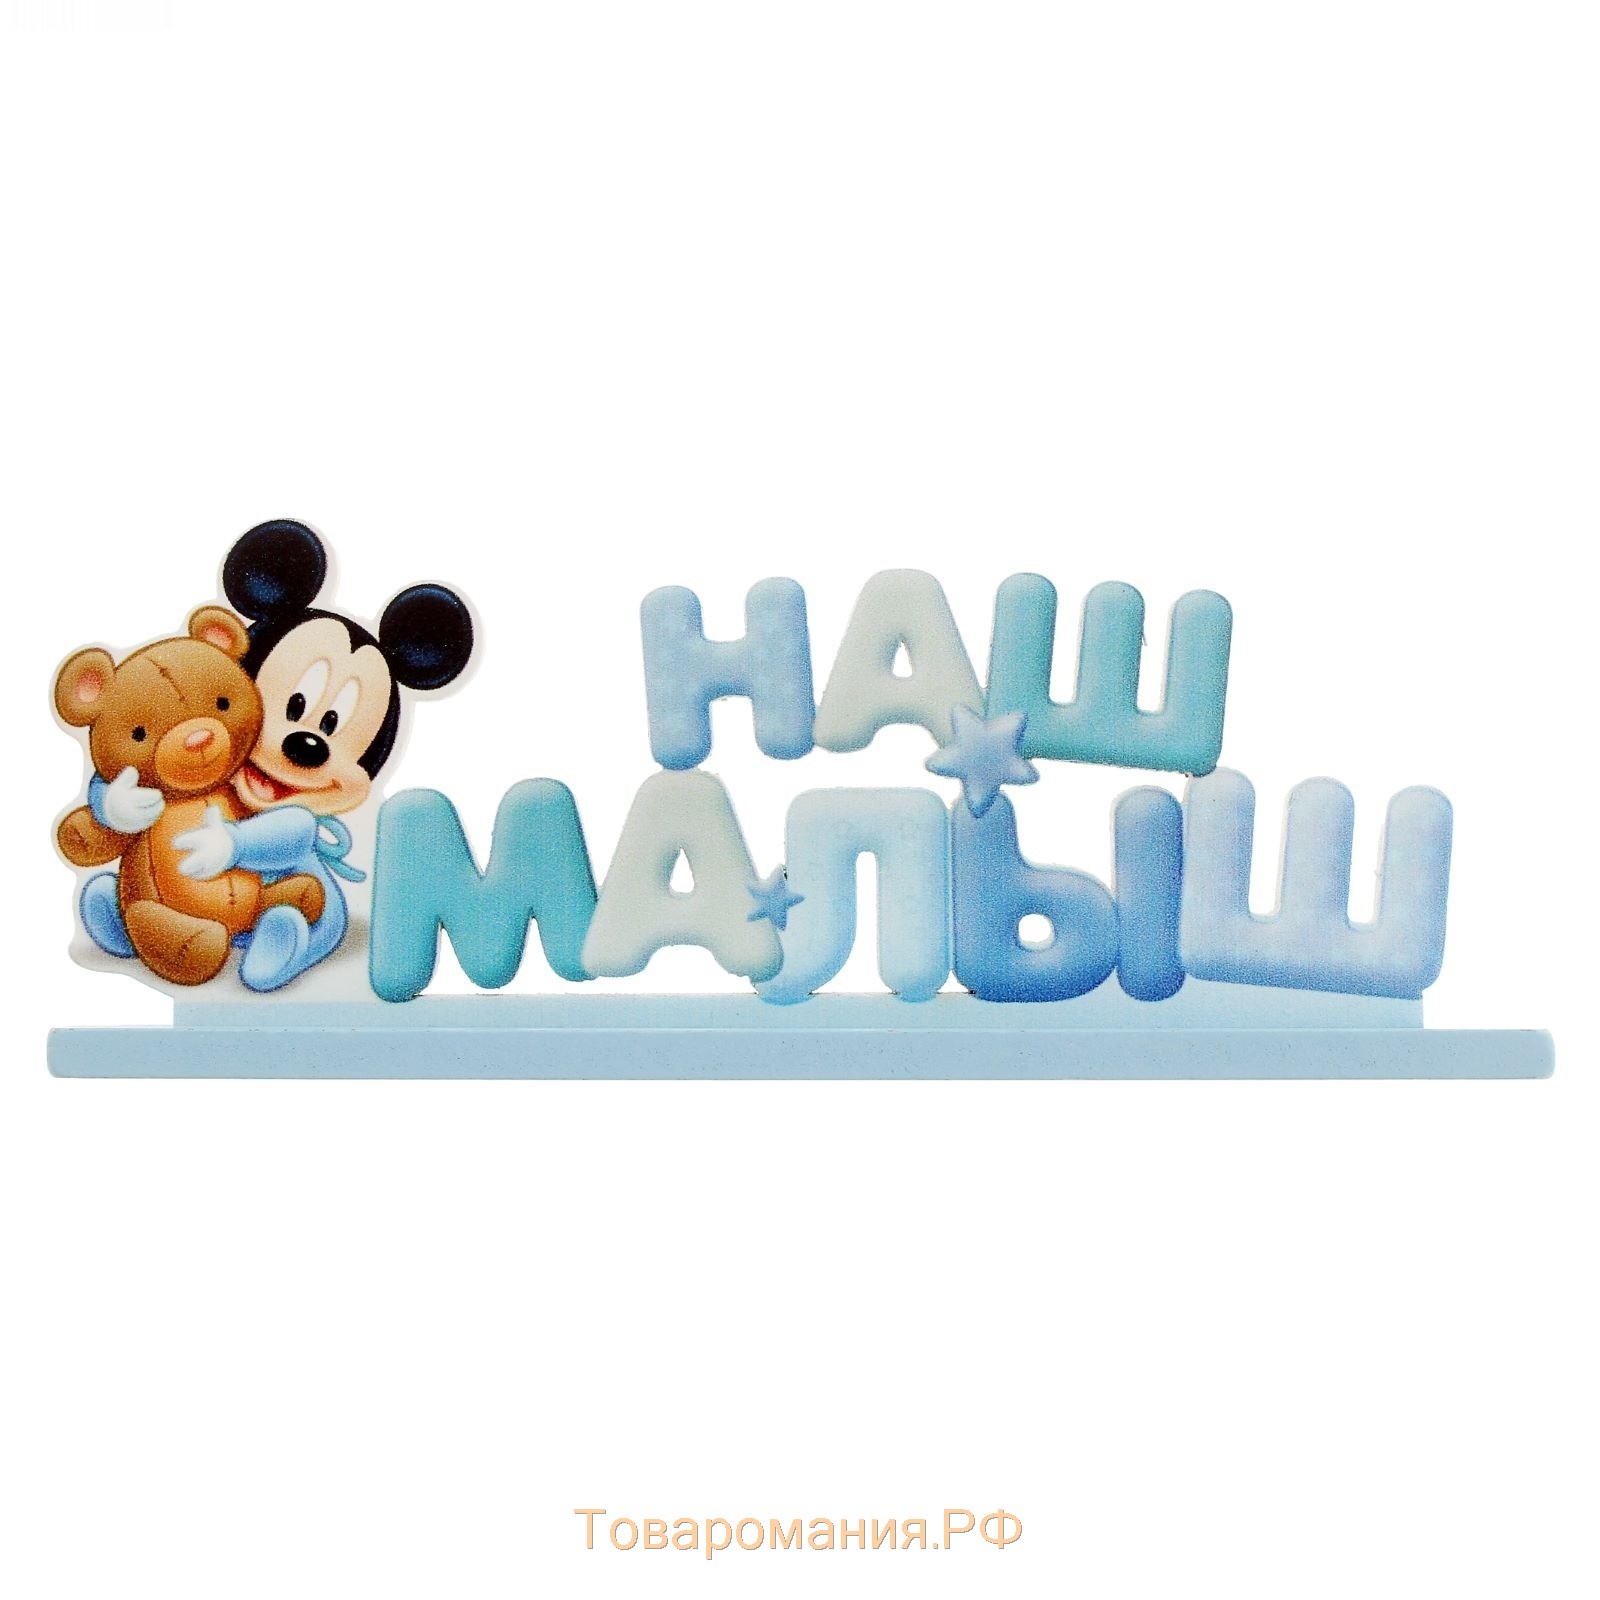 Интерьерные буквы на подставке "Наш малыш", Микки Маус и друзья, Дисней беби